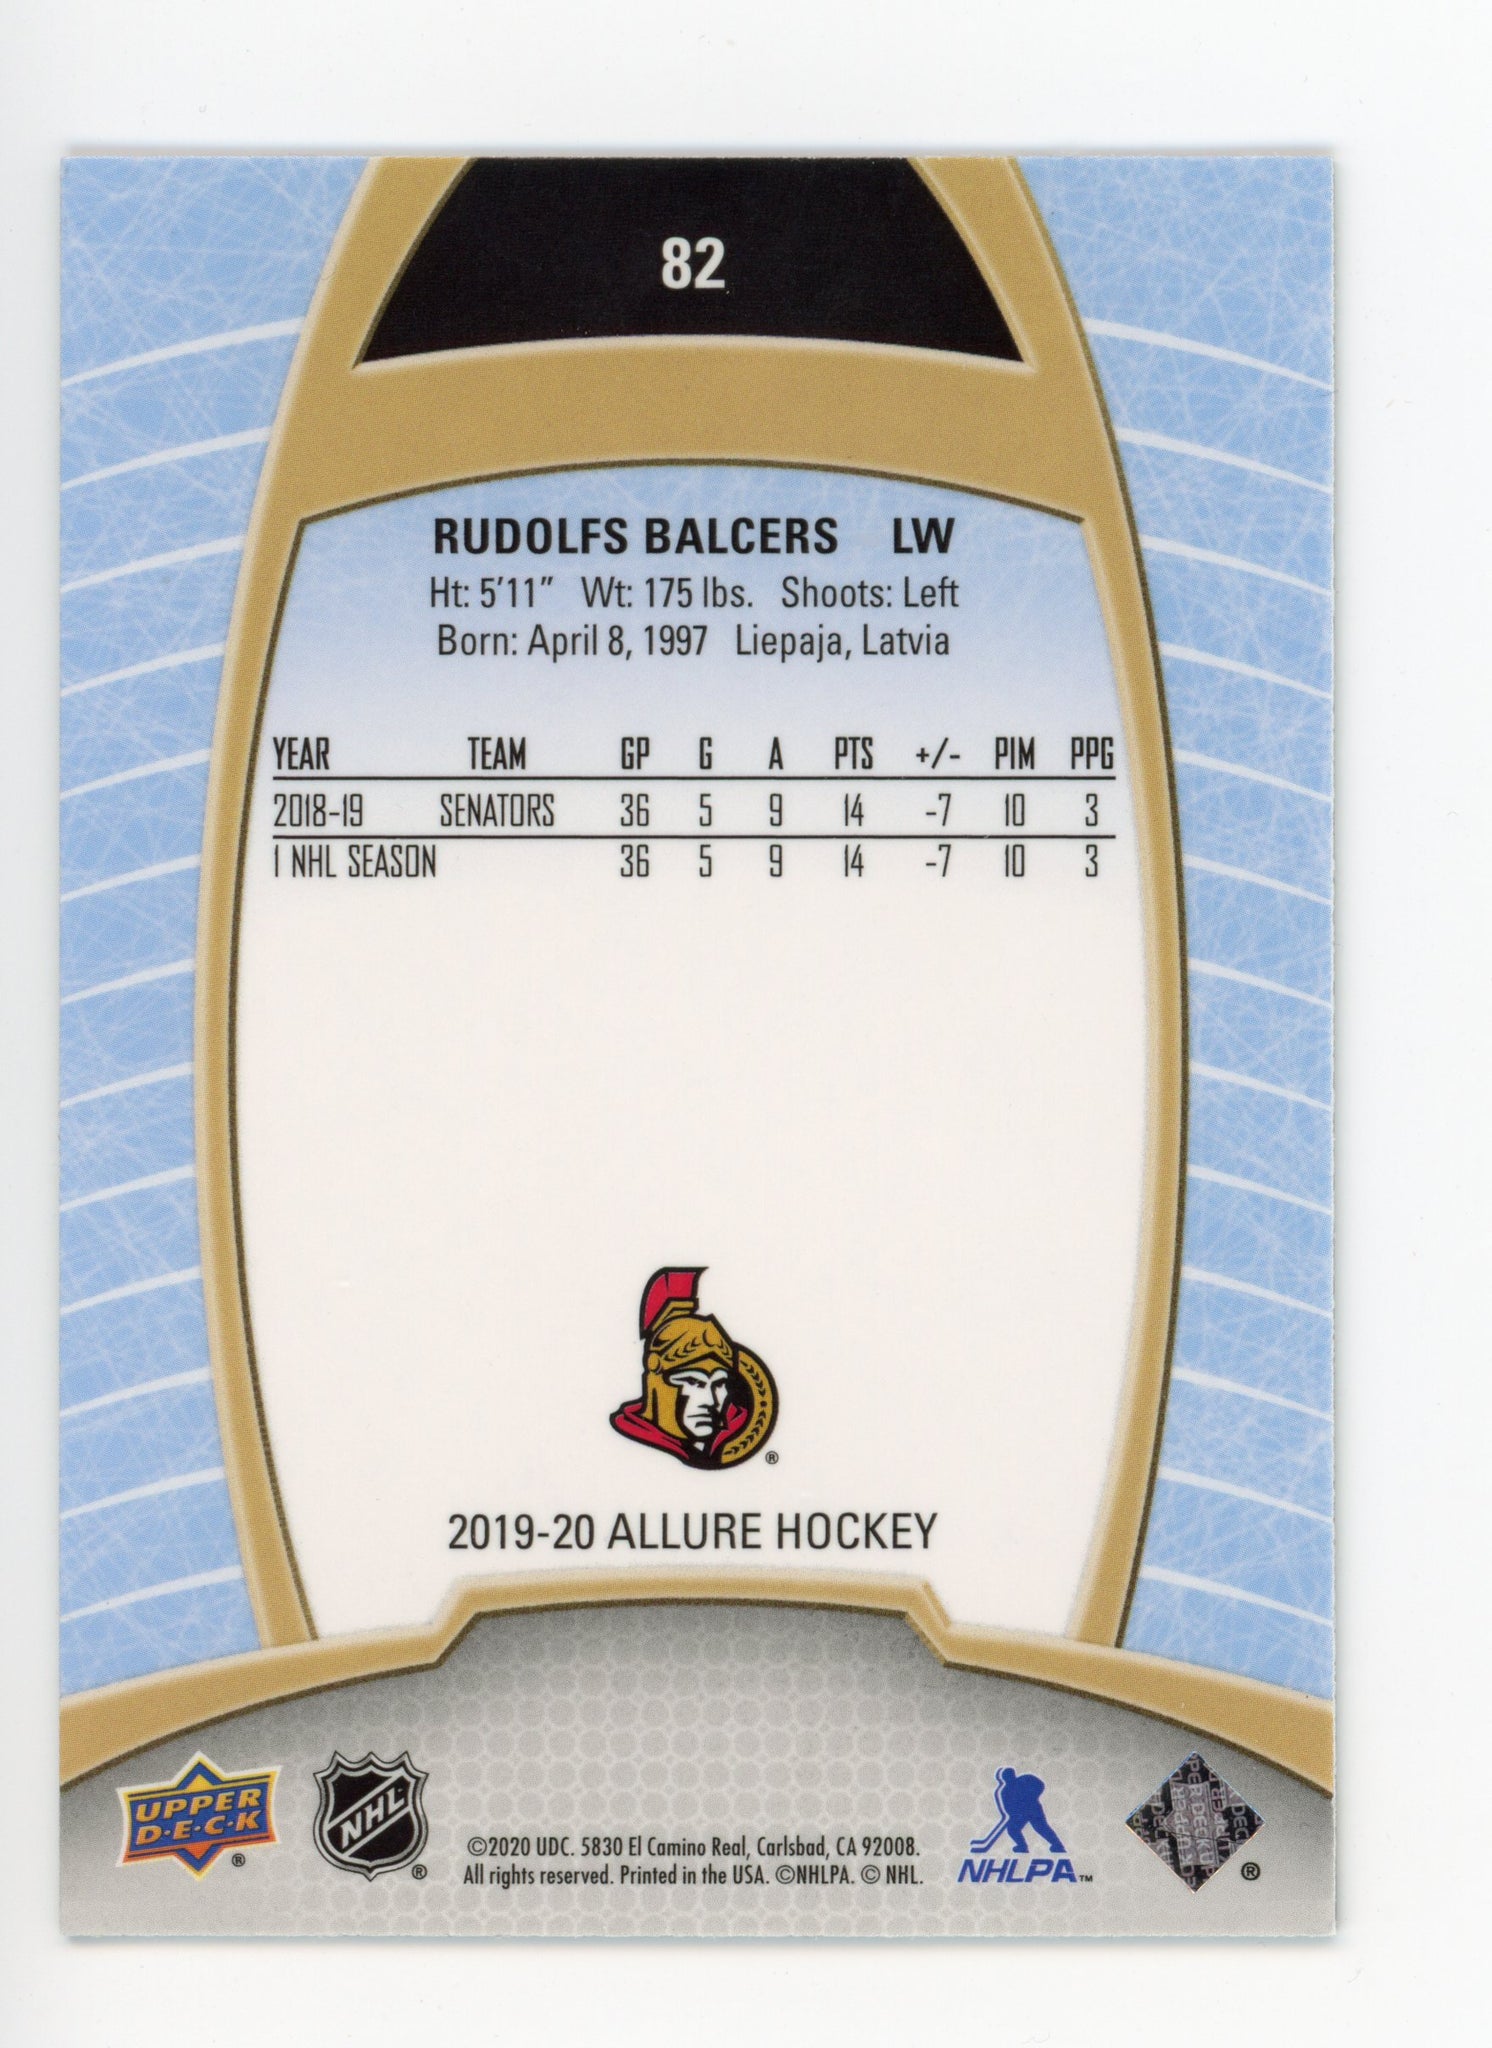 Rudolfs Balcers Upper Deck 2019-2020 Allure Rookie Ottawa Senators # 82